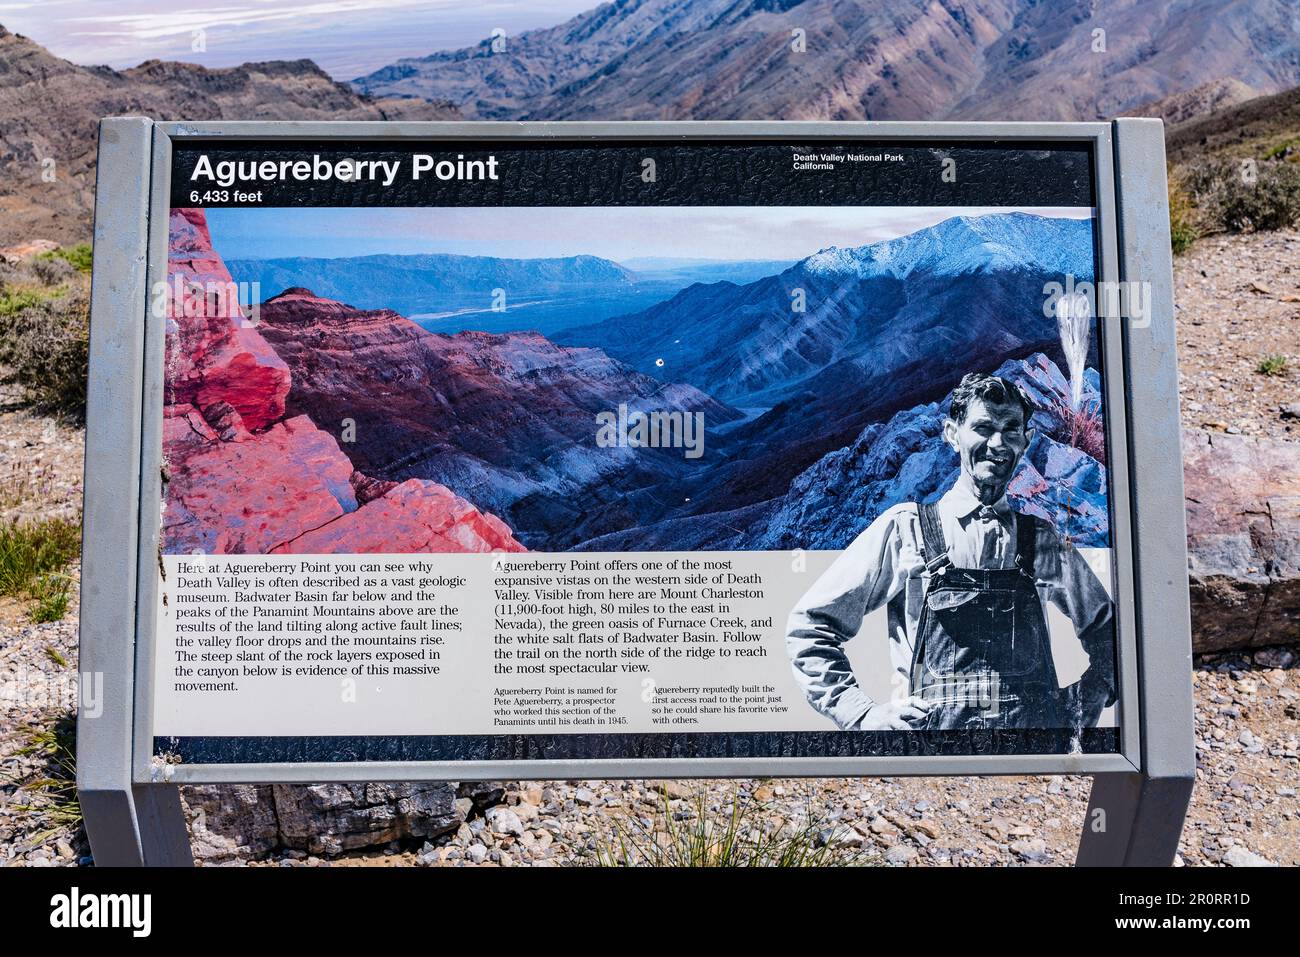 Aguereberry Point, 6433 Fuß (1960,8 Meter) Höhe, mit Blick auf Death Valley, das angeblich der heißeste Ort auf der Welt ist. Stockfoto